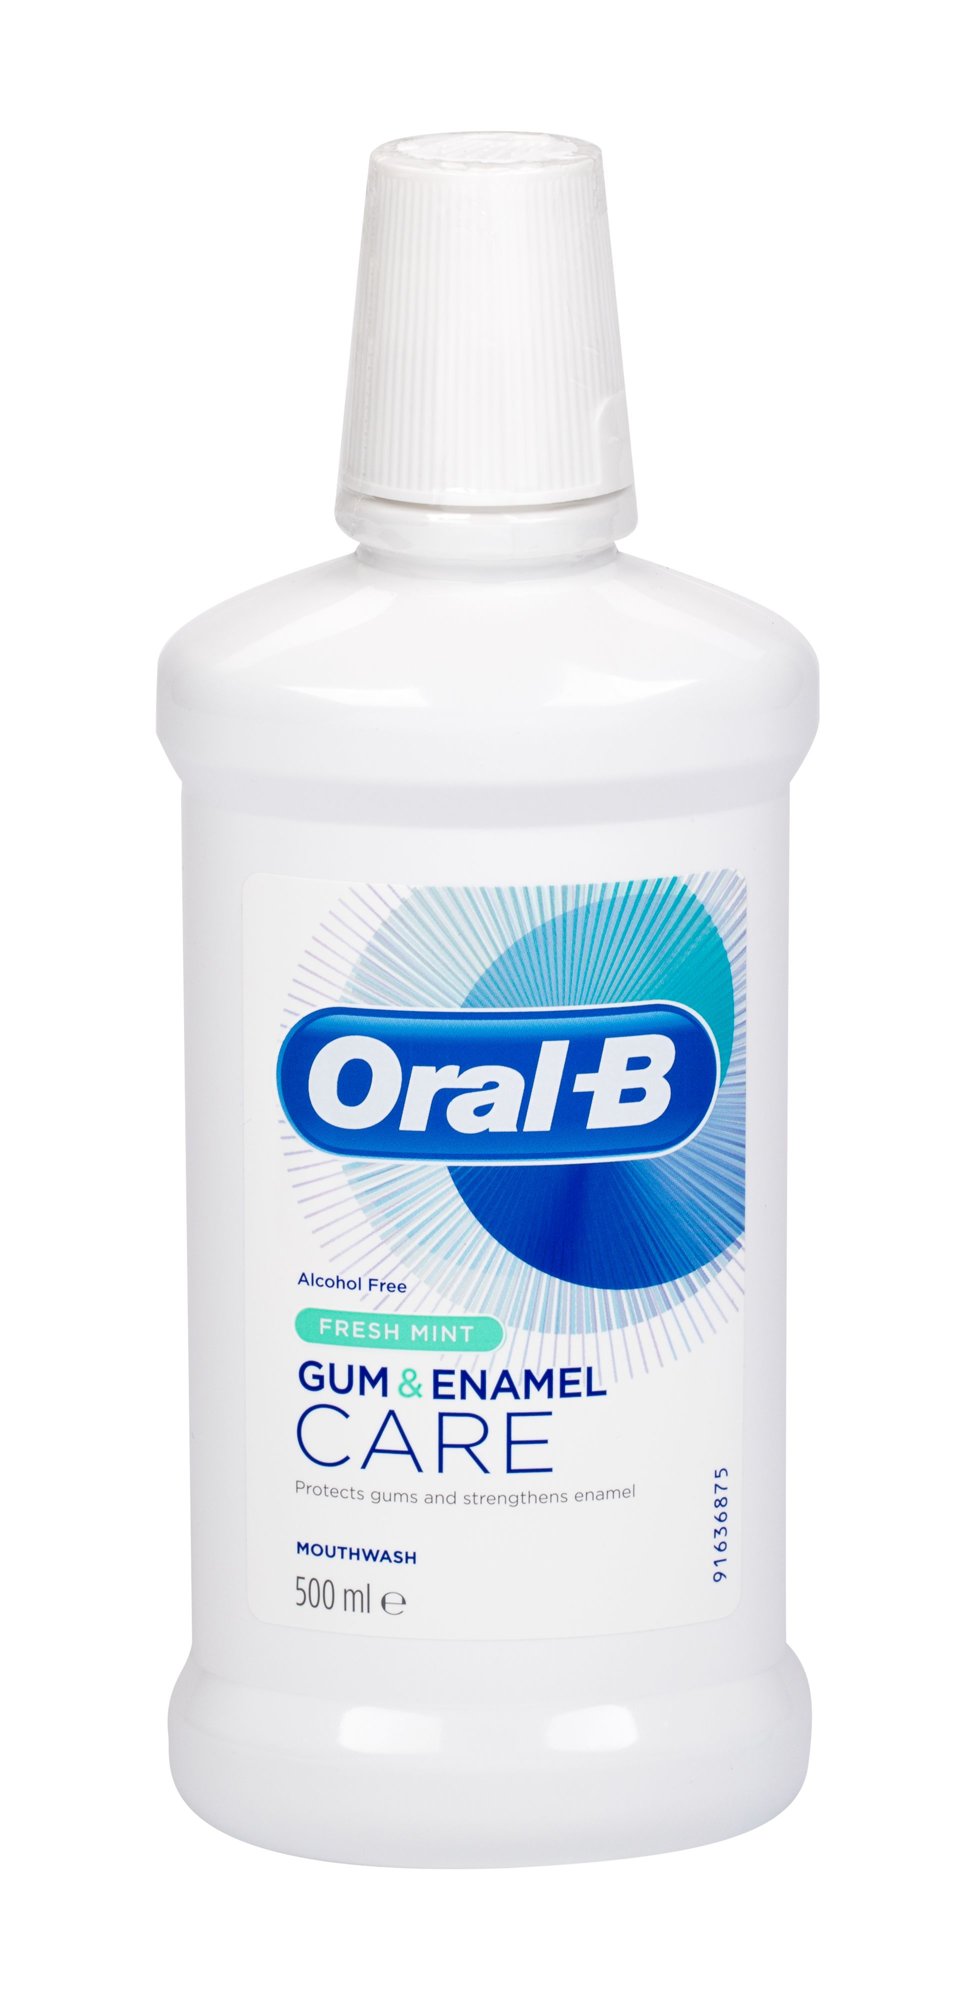 Oral-B Gum & Enamel Care